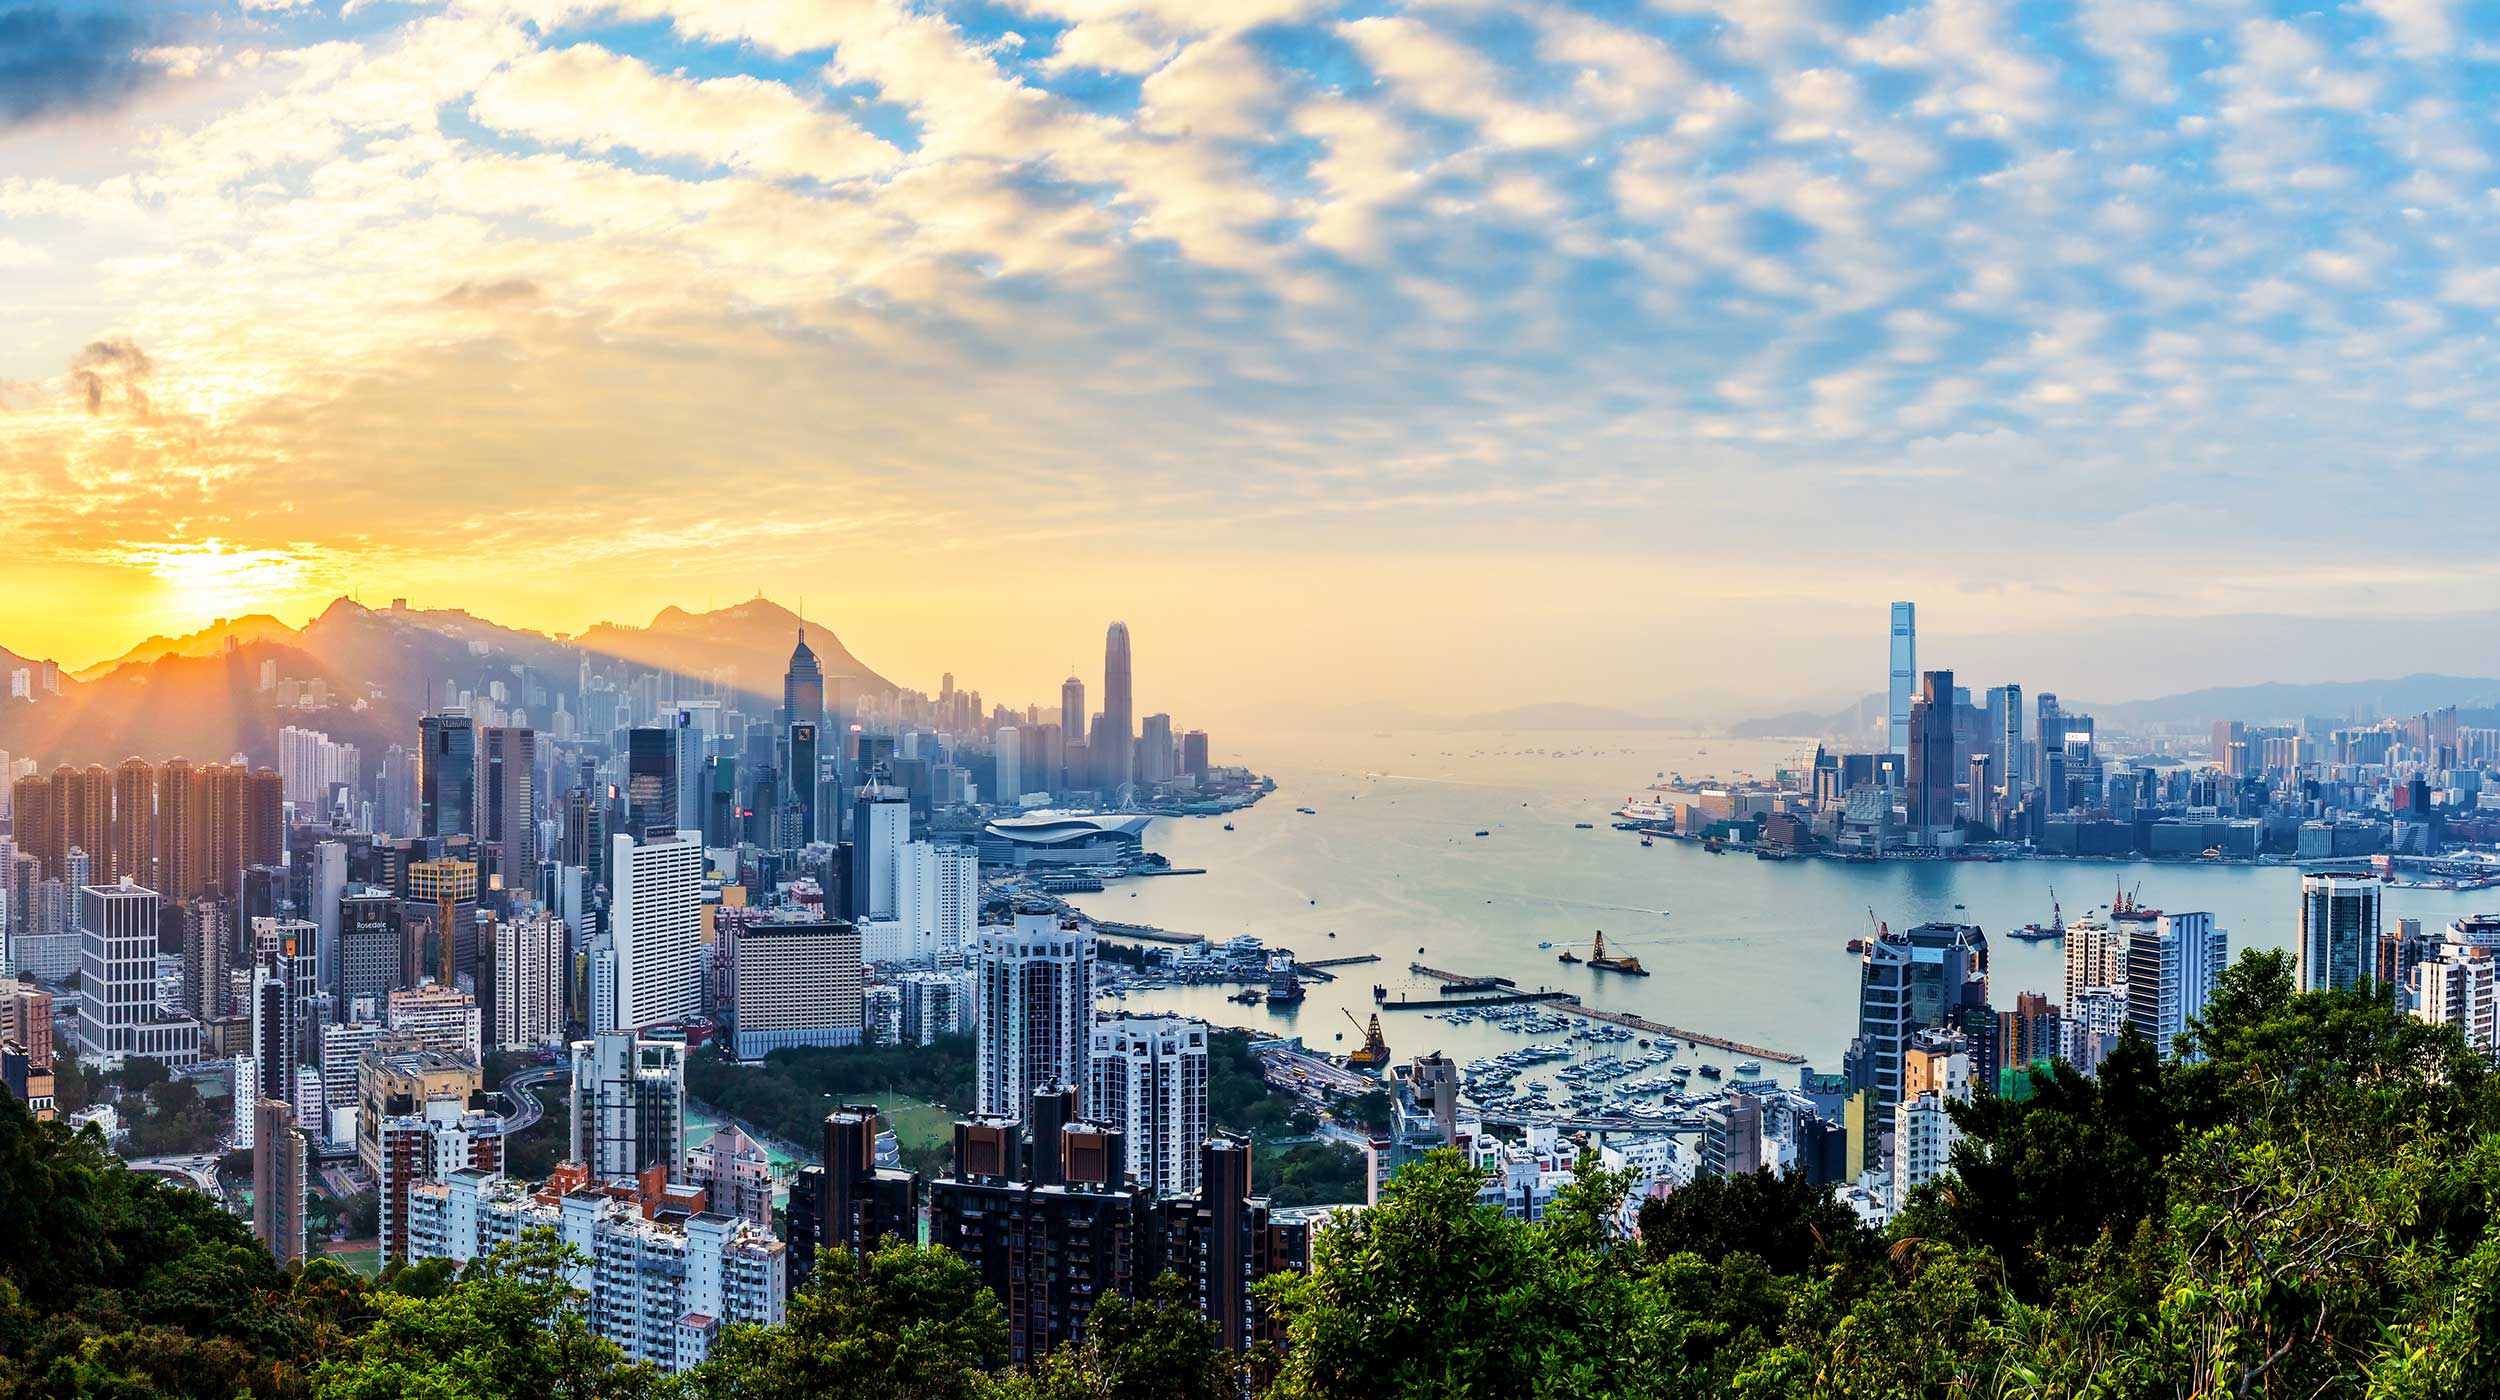 Hong Kong cityscape at sunset